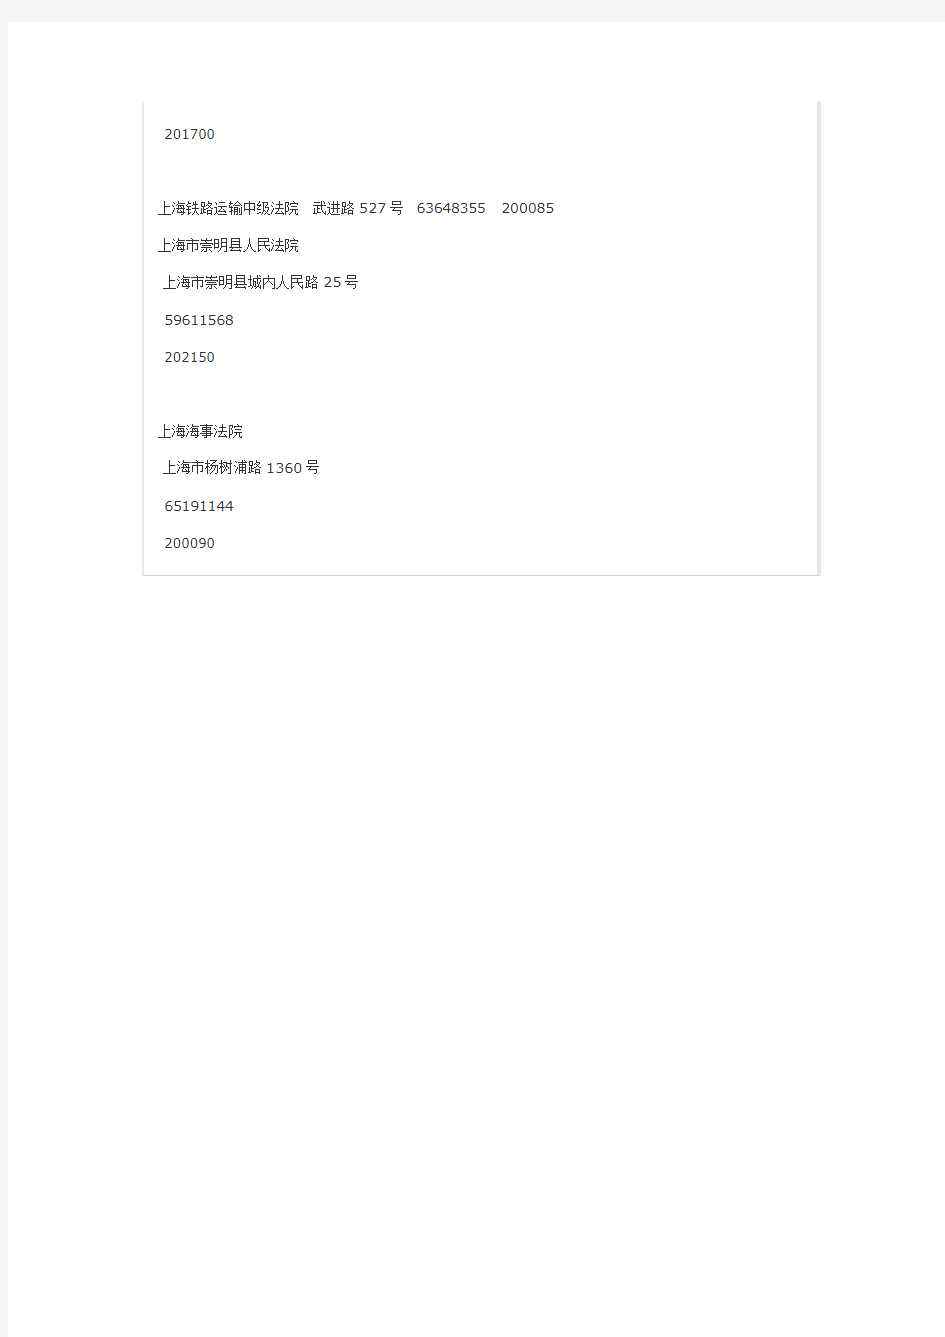 上海法院地址及电话邮政编码